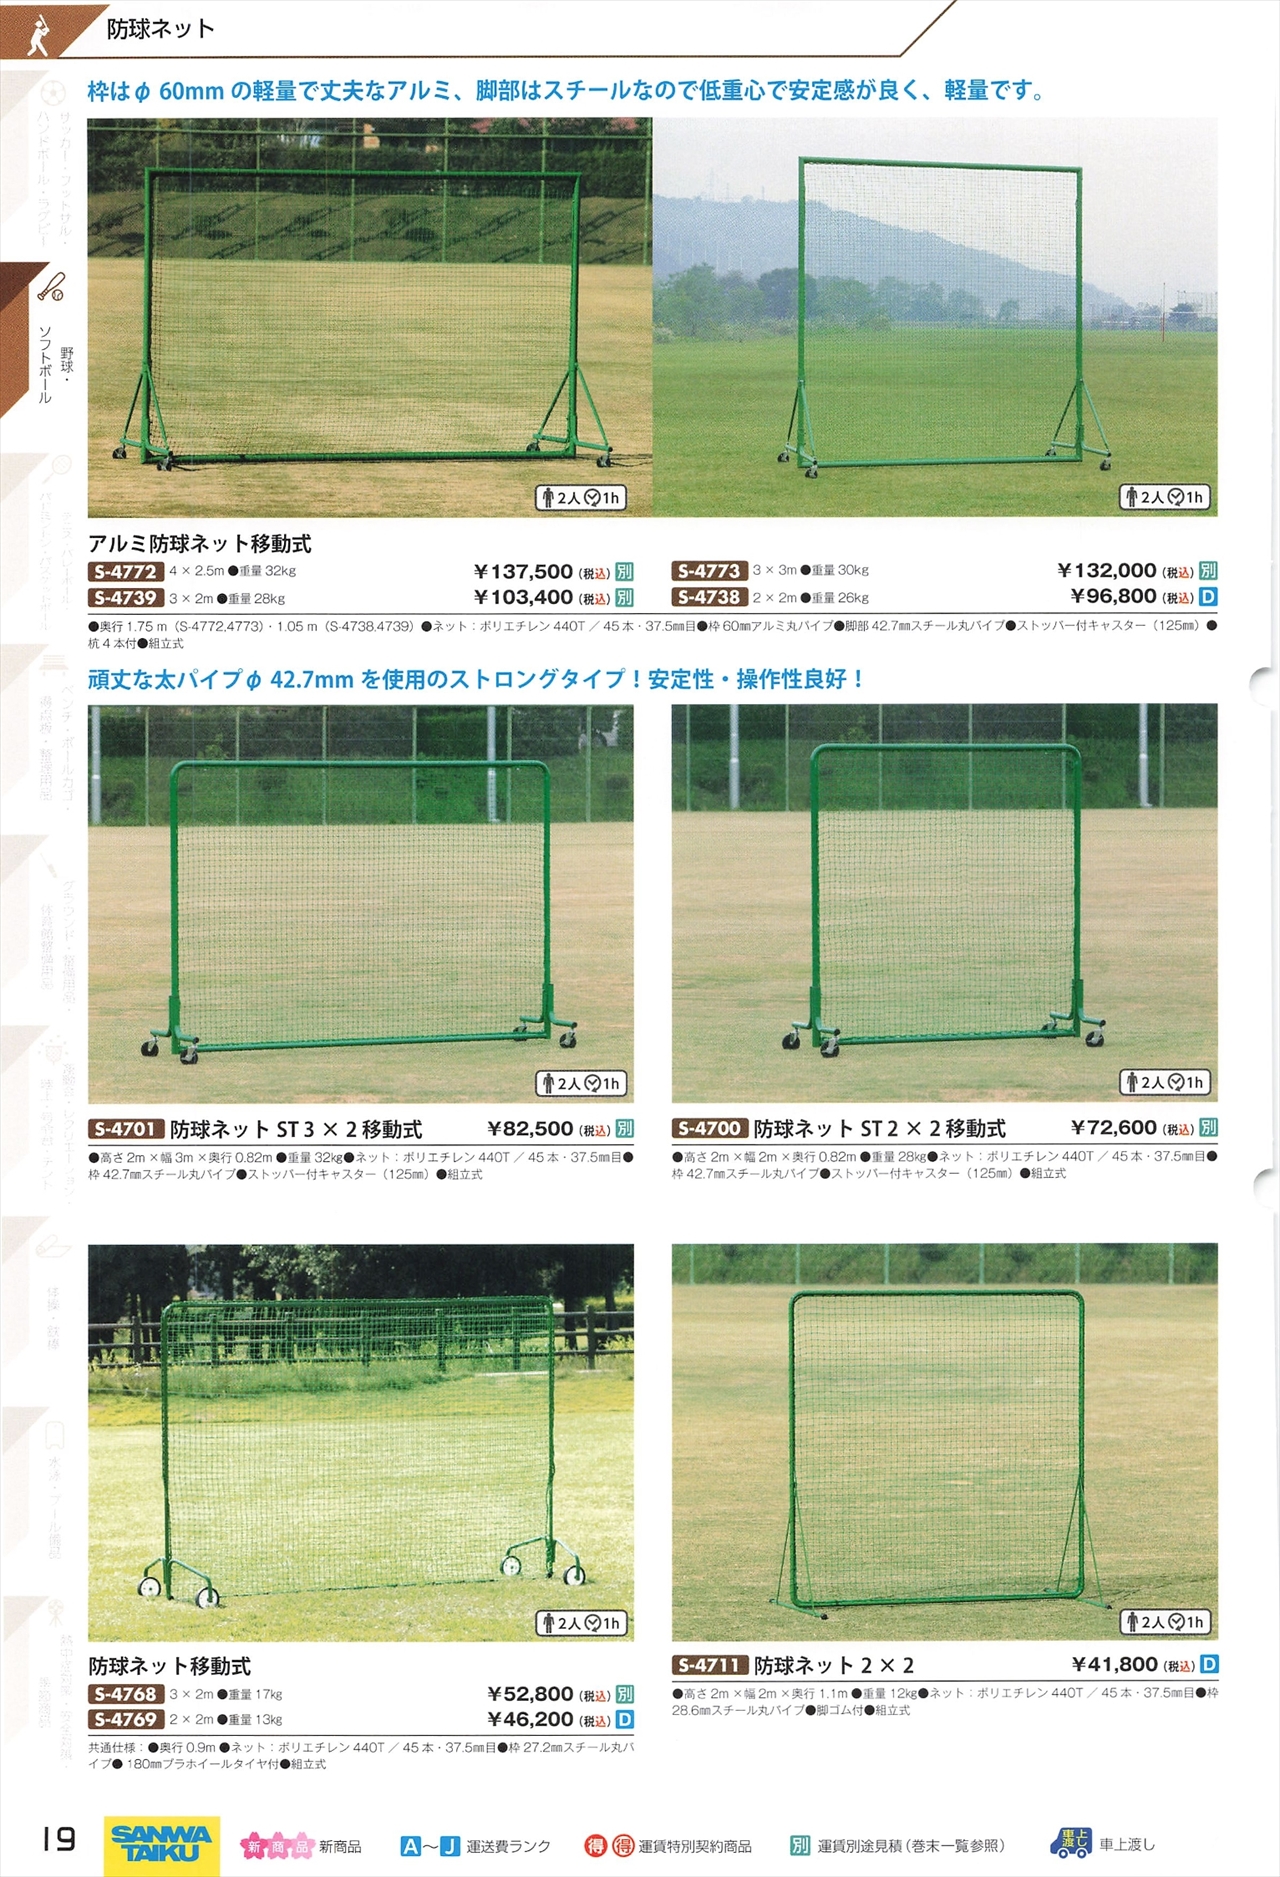 野球ネット(グリーン) 6.3m×22.6m :OR-44BNGR-SE700826:アズマネット